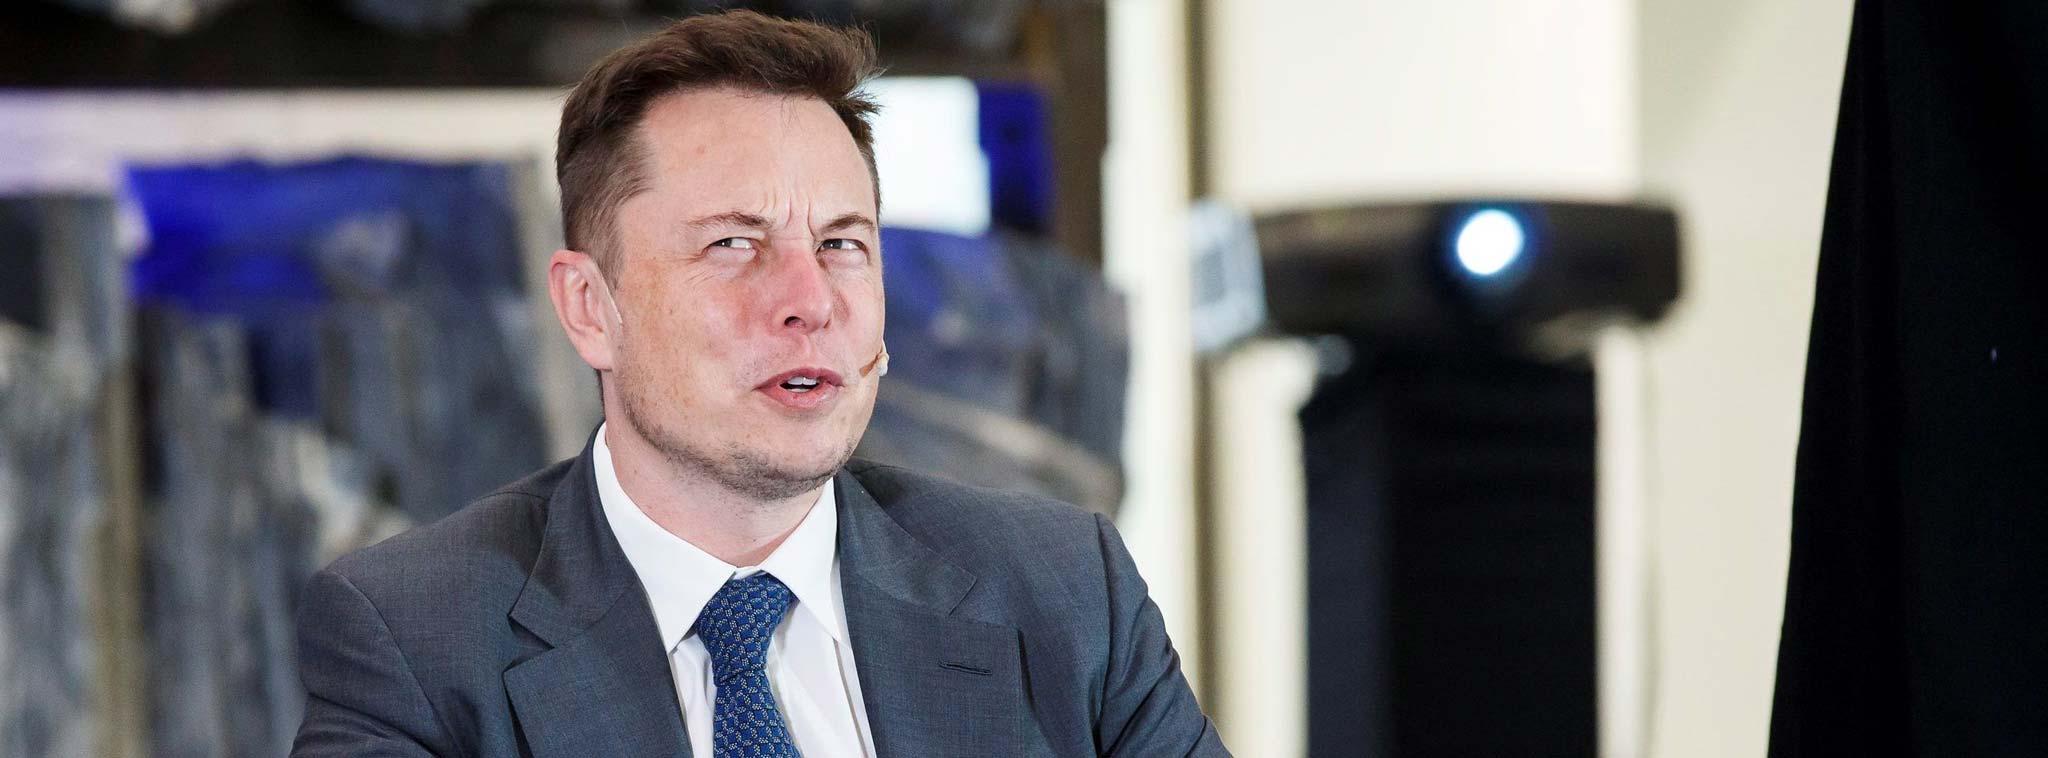 Một tuần của Elon Musk: làm việc 80-90 tiếng, ngủ 6 tiếng/đêm, 4 ngày chơi với con, 10 tiếng hẹn hò